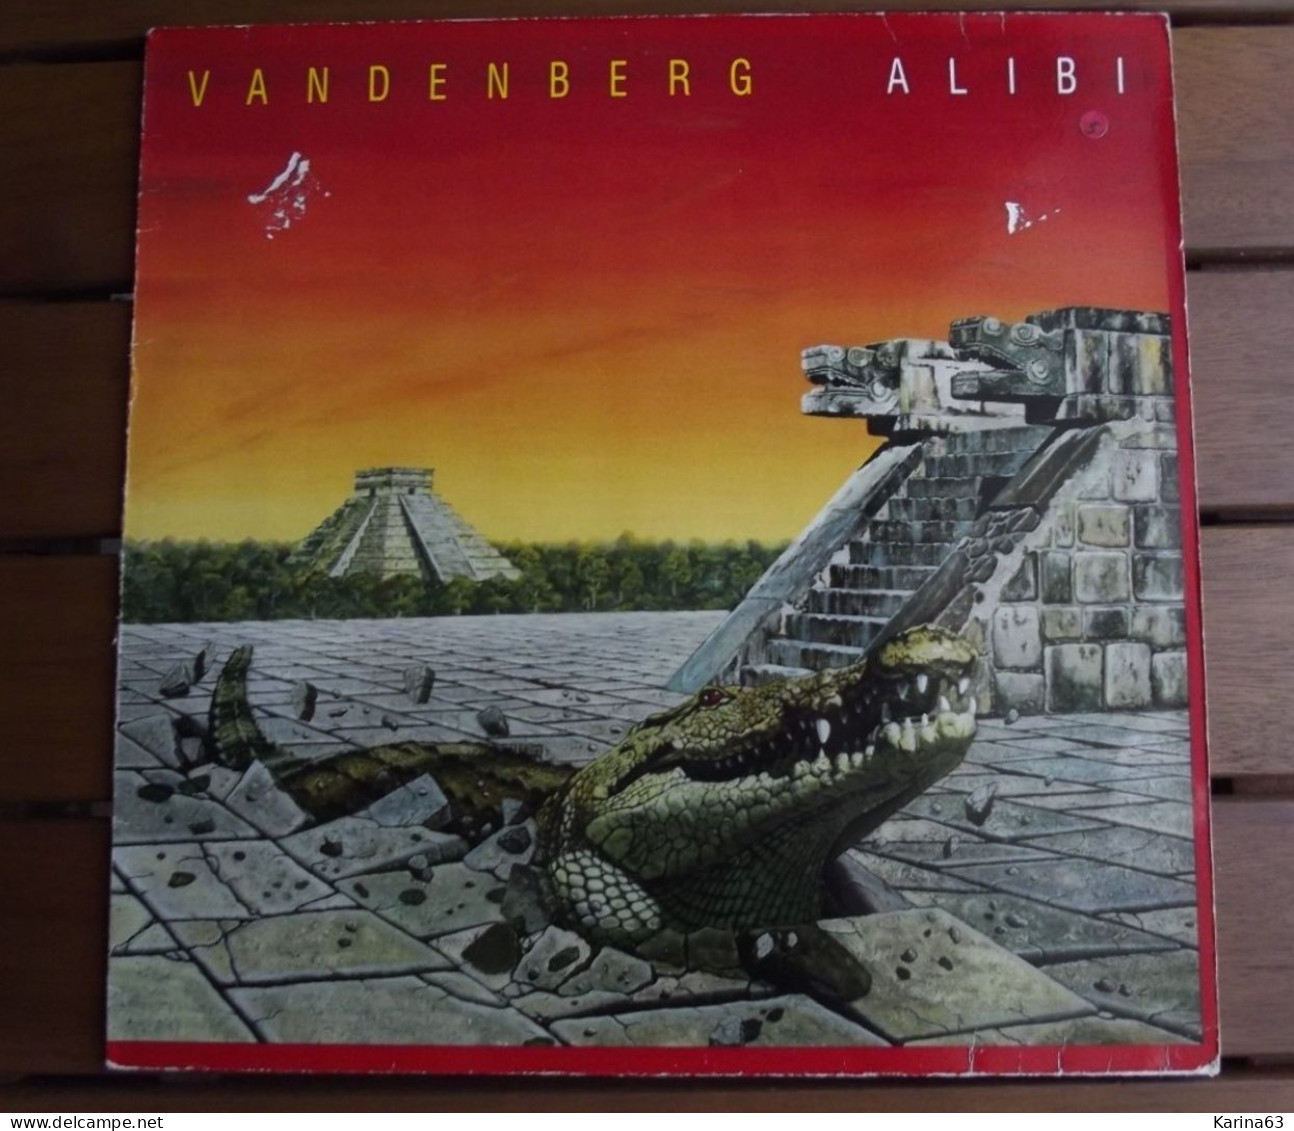 Lot 4 albums : Vandenberg(LP) - Big Country (LP) - America (LP)- Kashmir (LP)